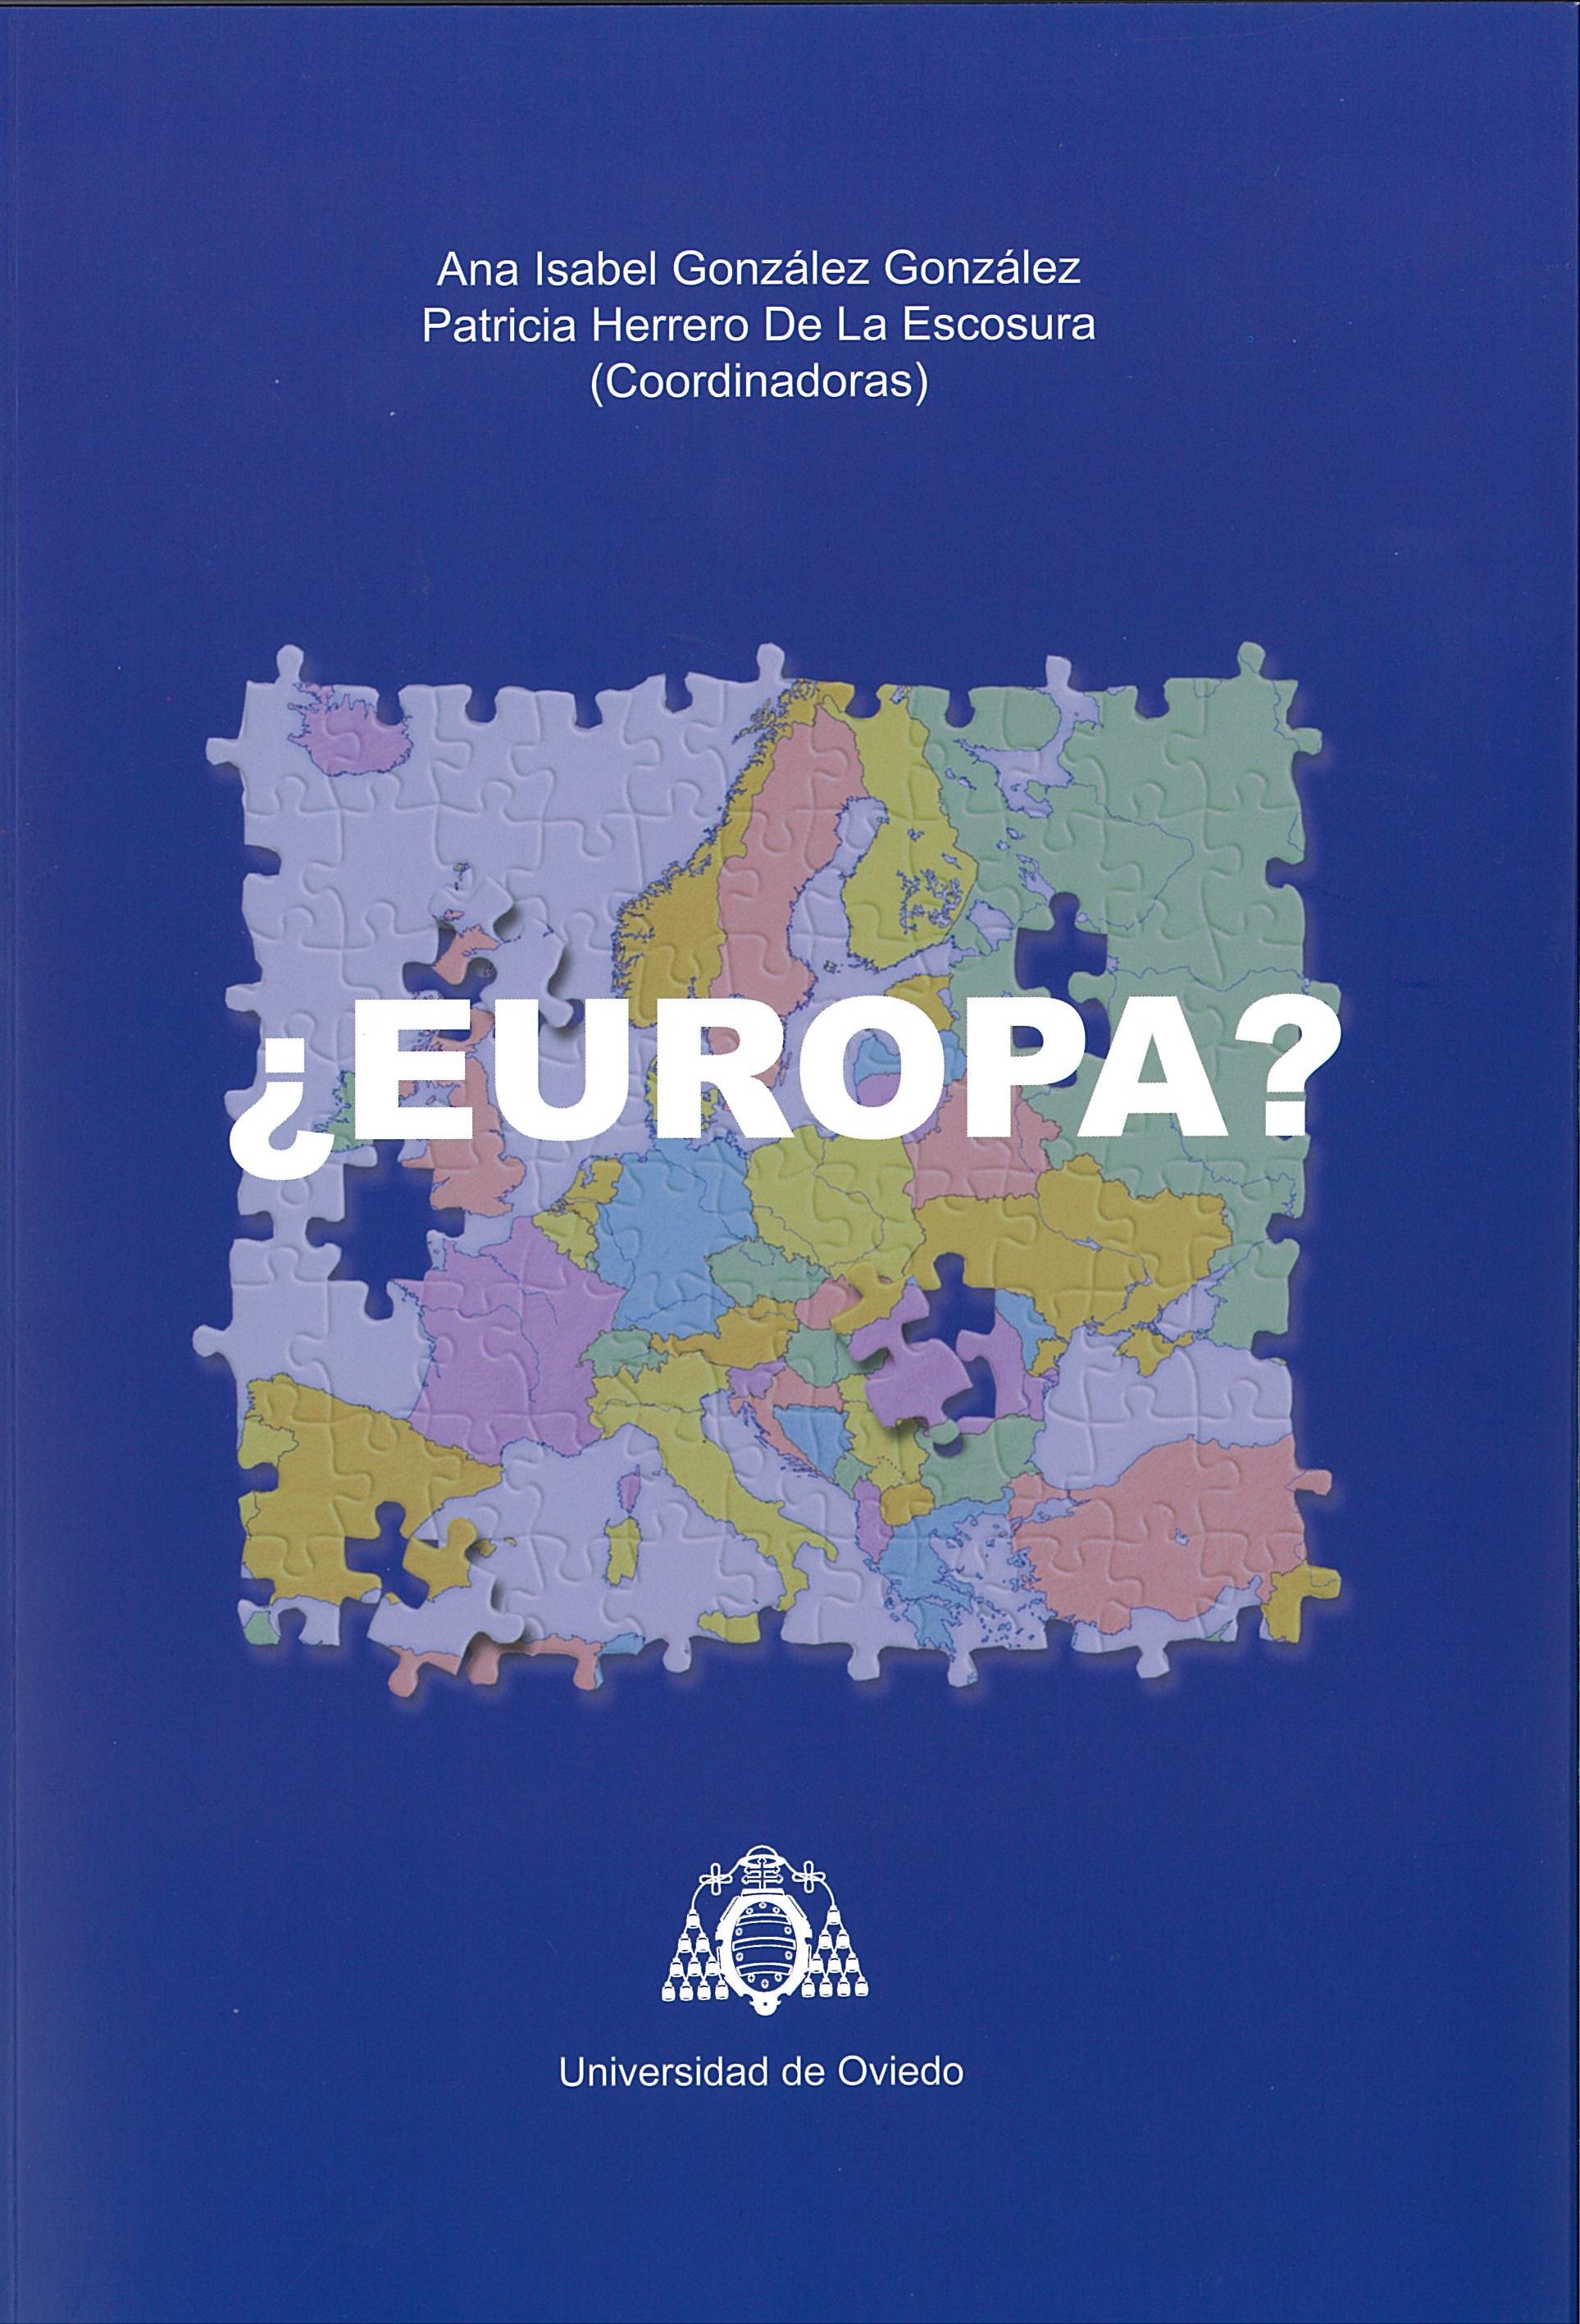 Imagen de portada del libro ¿Europa?